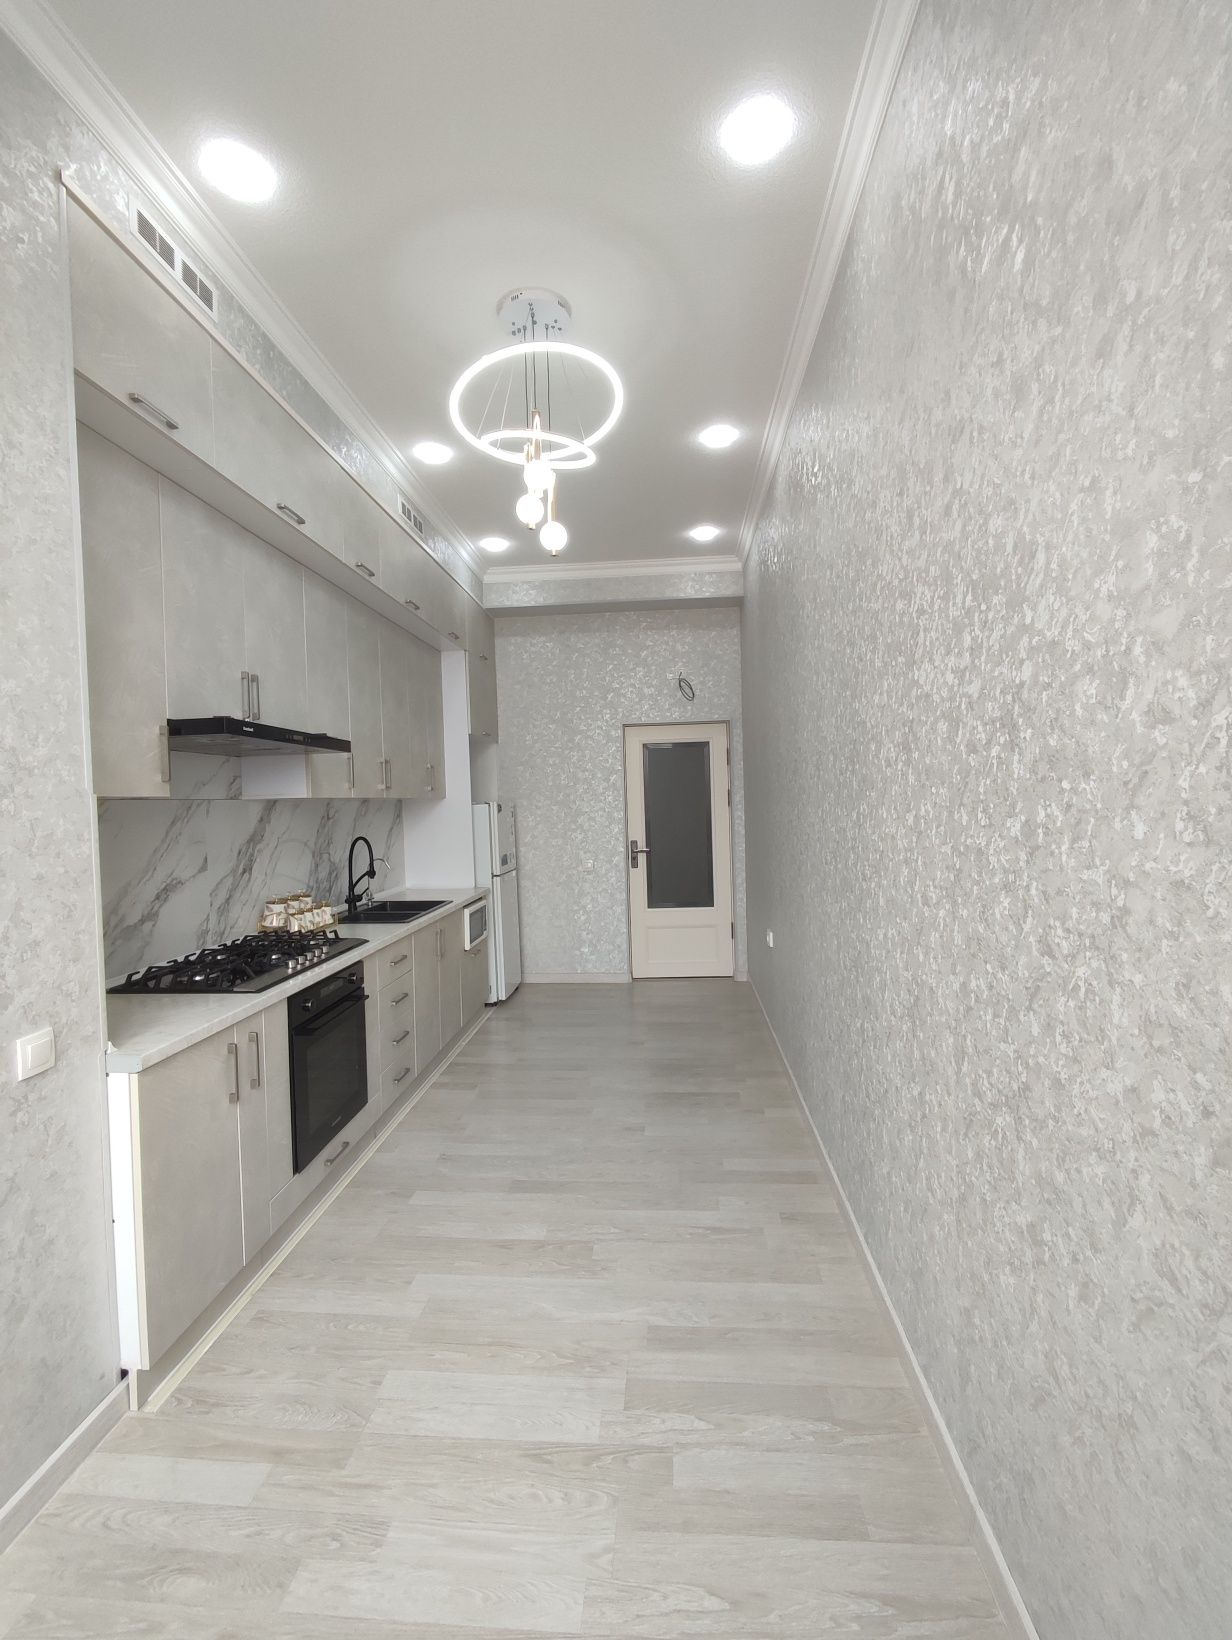 Продается квартира в Ташкенте 3-комнатная